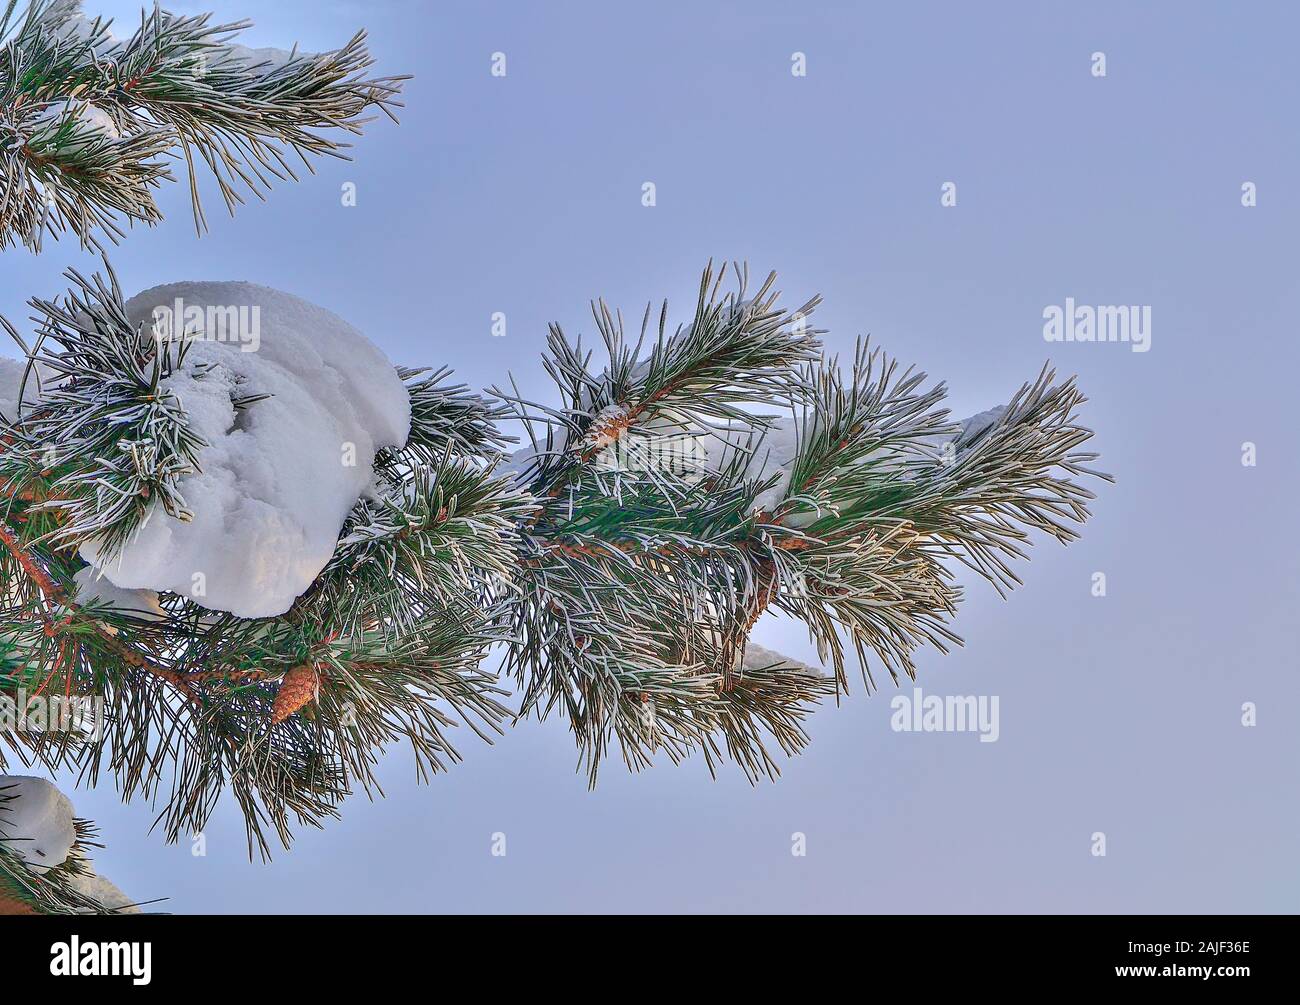 Weißer Schnee und Raureif auf Pine Tree Branch mit Kegeln in der Nähe auf und blauer Himmel. Grüne Nadeln von Koniferen Baum mit Rauhreif bedeckt. Detail der Stockfoto